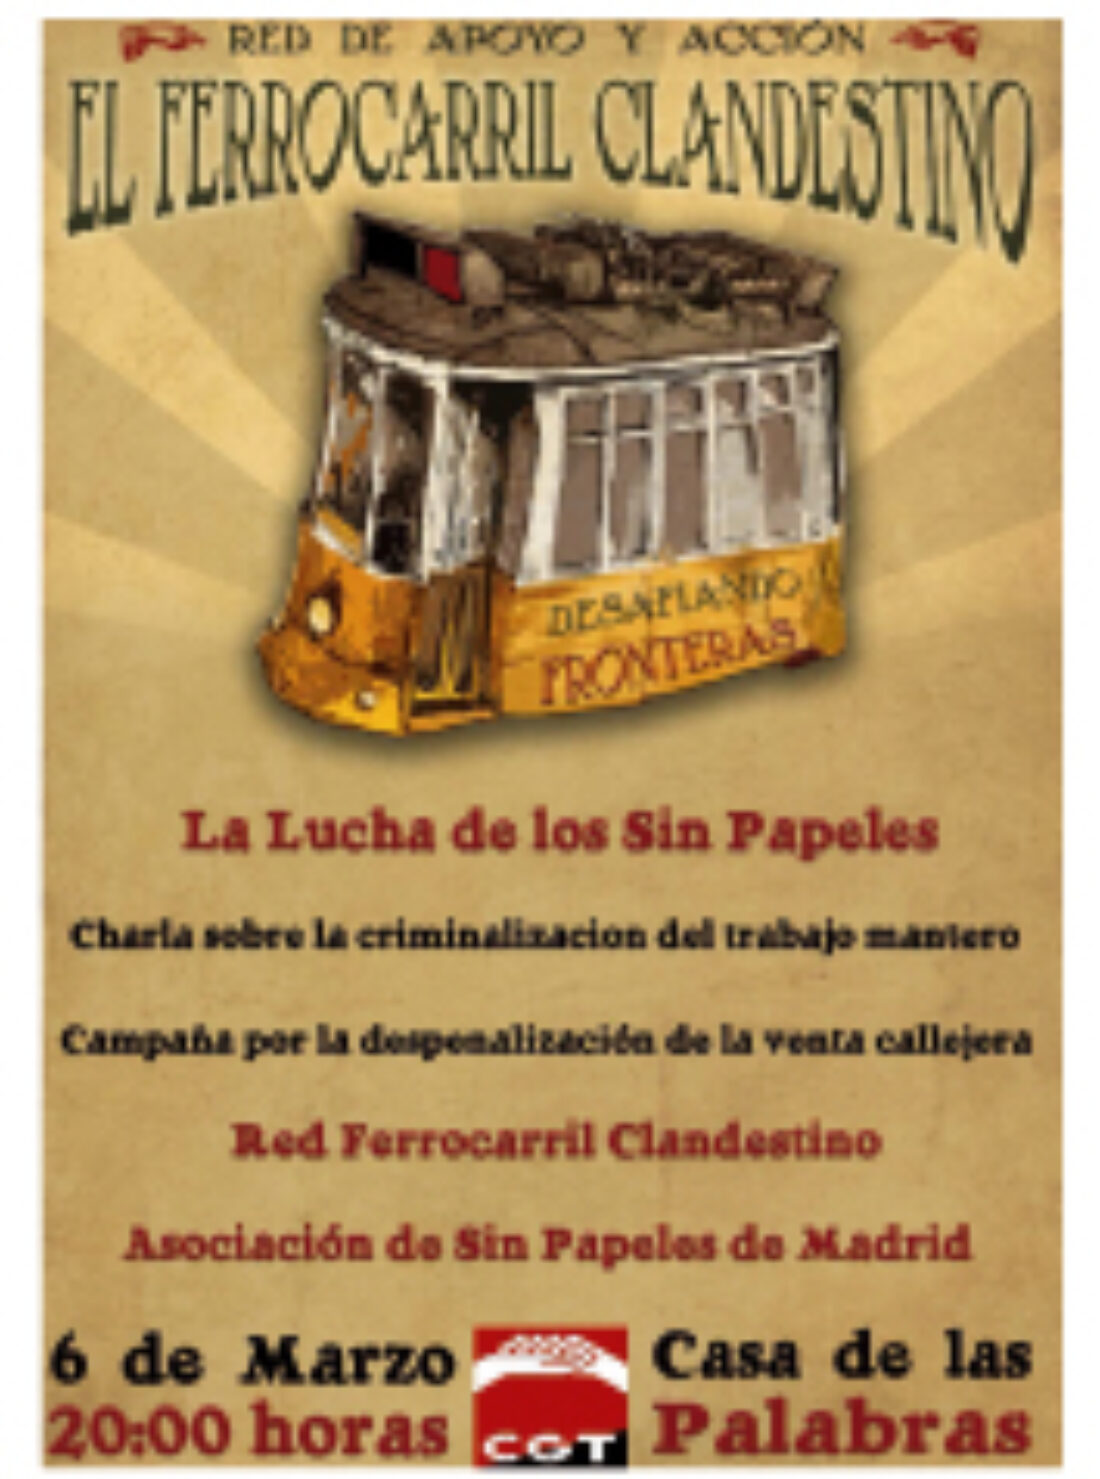 Valladolid, 6 de marzo : charla sobre la criminalización del trabajo mantero «La Lucha de los Sin Papeles»